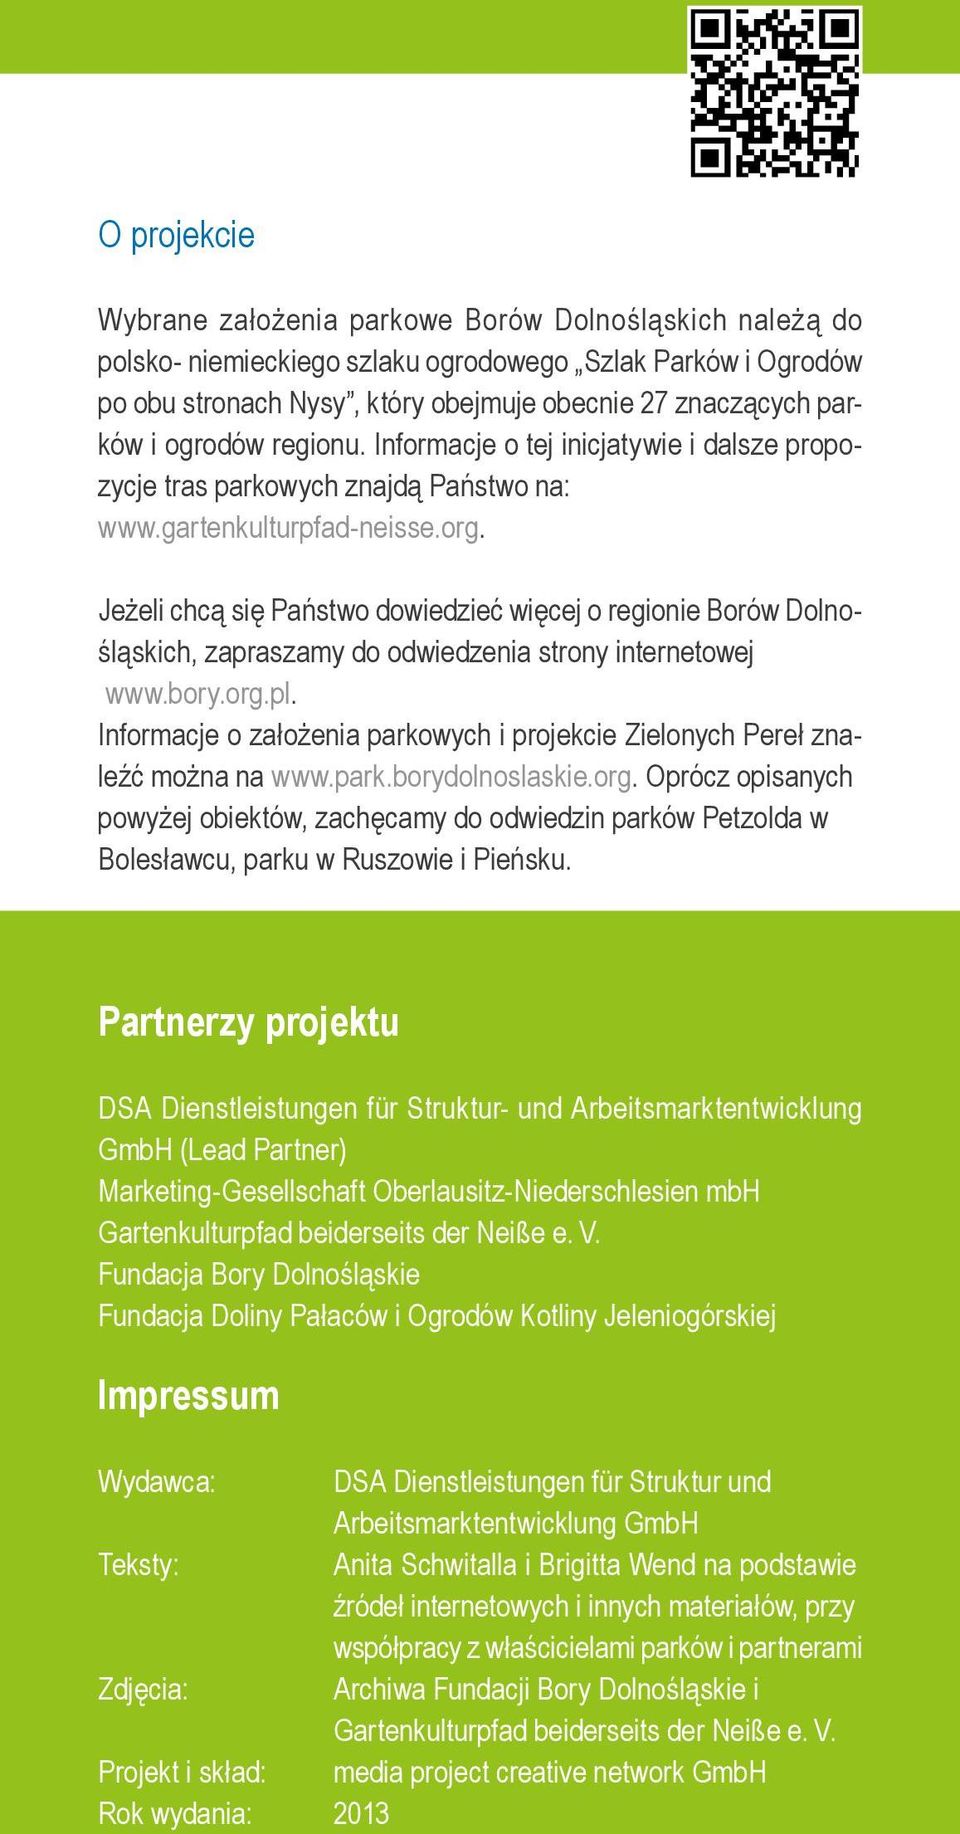 Jeżeli chcą się Państwo dowiedzieć więcej o regionie Borów Dolnośląskich, zapraszamy do odwiedzenia strony internetowej www.bory.org.pl.